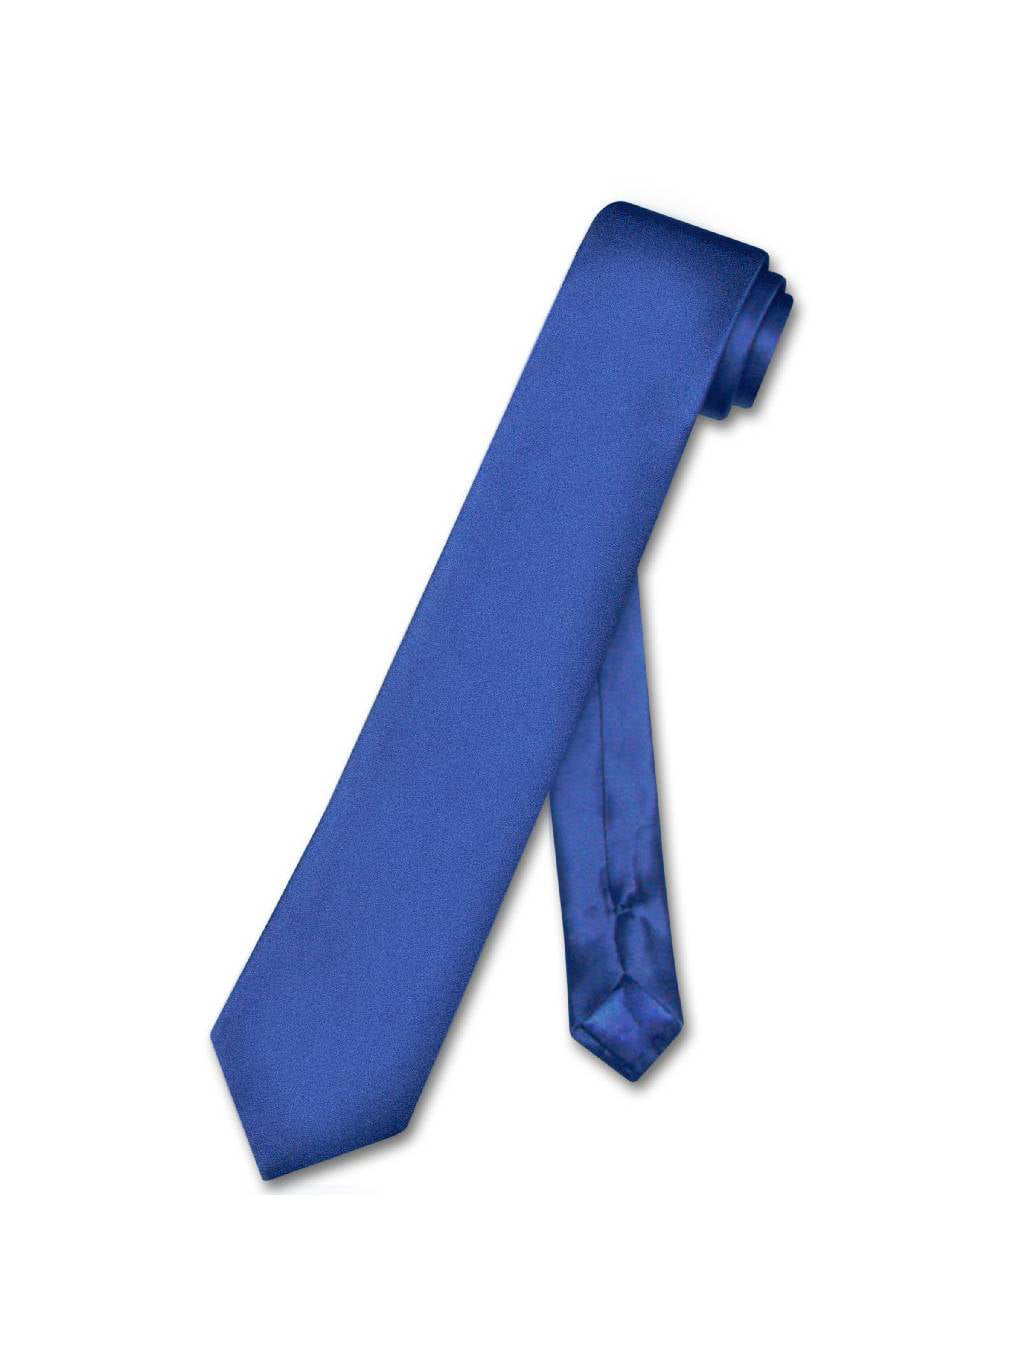 Biagio Boys NeckTie Solid ROYAL BLUE Color Youth Neck Tie 